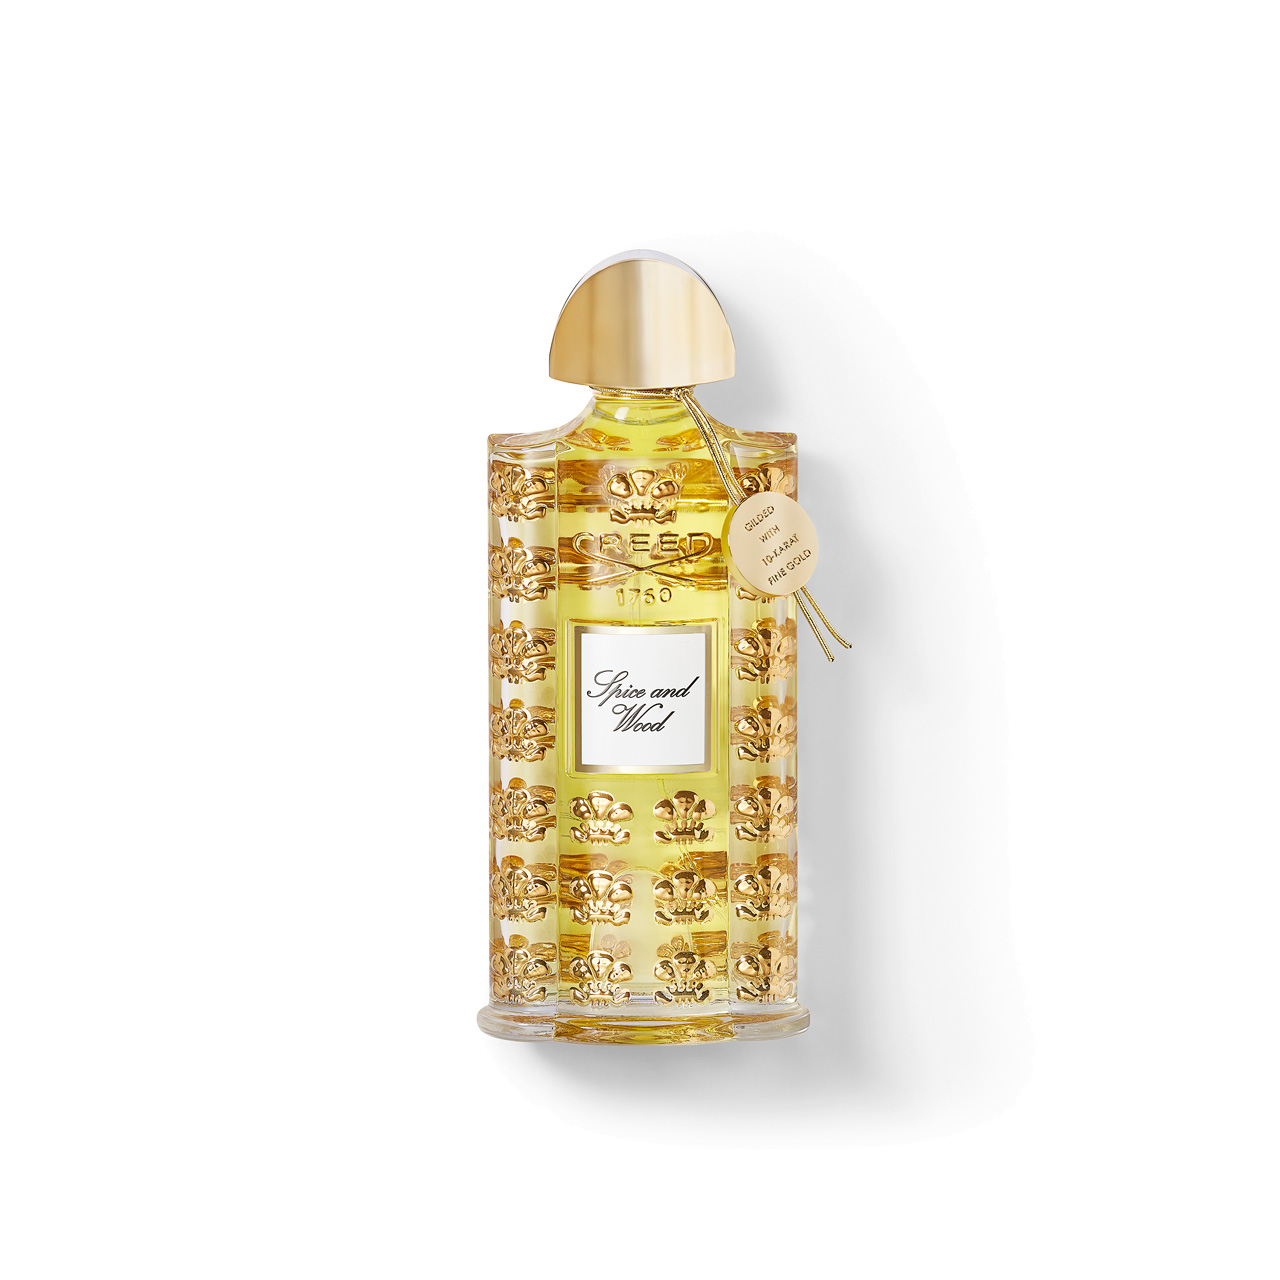 Les Royales Exclusives Spice and Wood Eau de Parfum Millesime